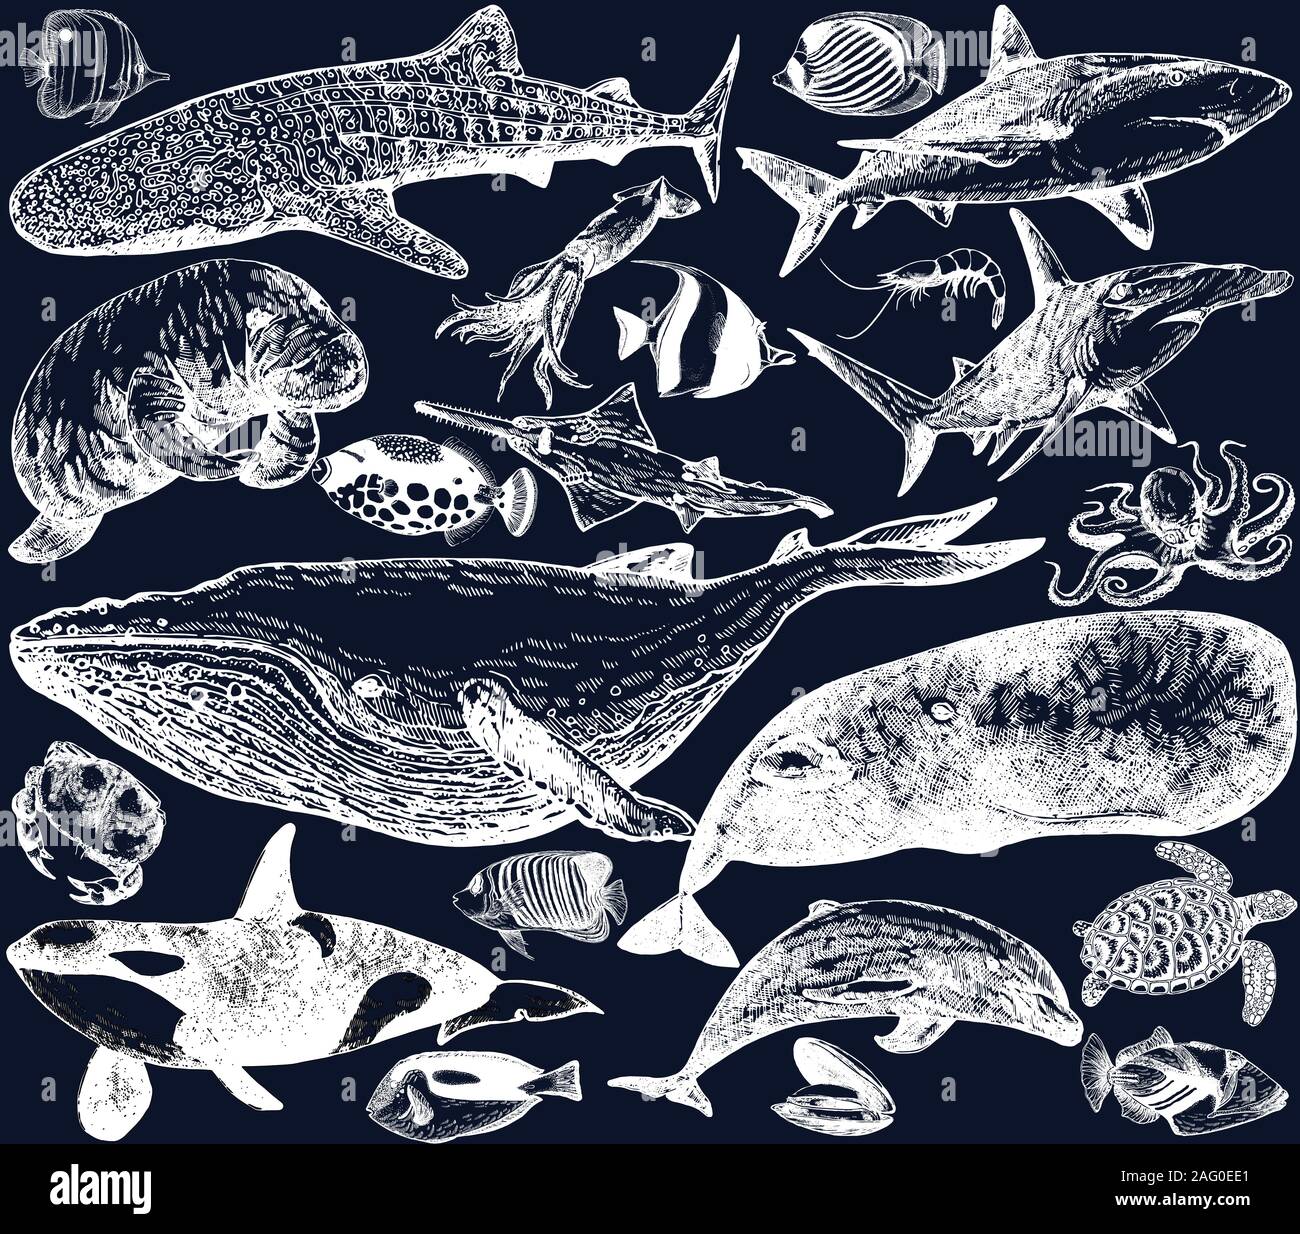 Gran conjunto de estilo boceto dibujados a mano los animales del mar y las criaturas aislado sobre fondo oscuro. Ilustración vectorial. Ilustración del Vector